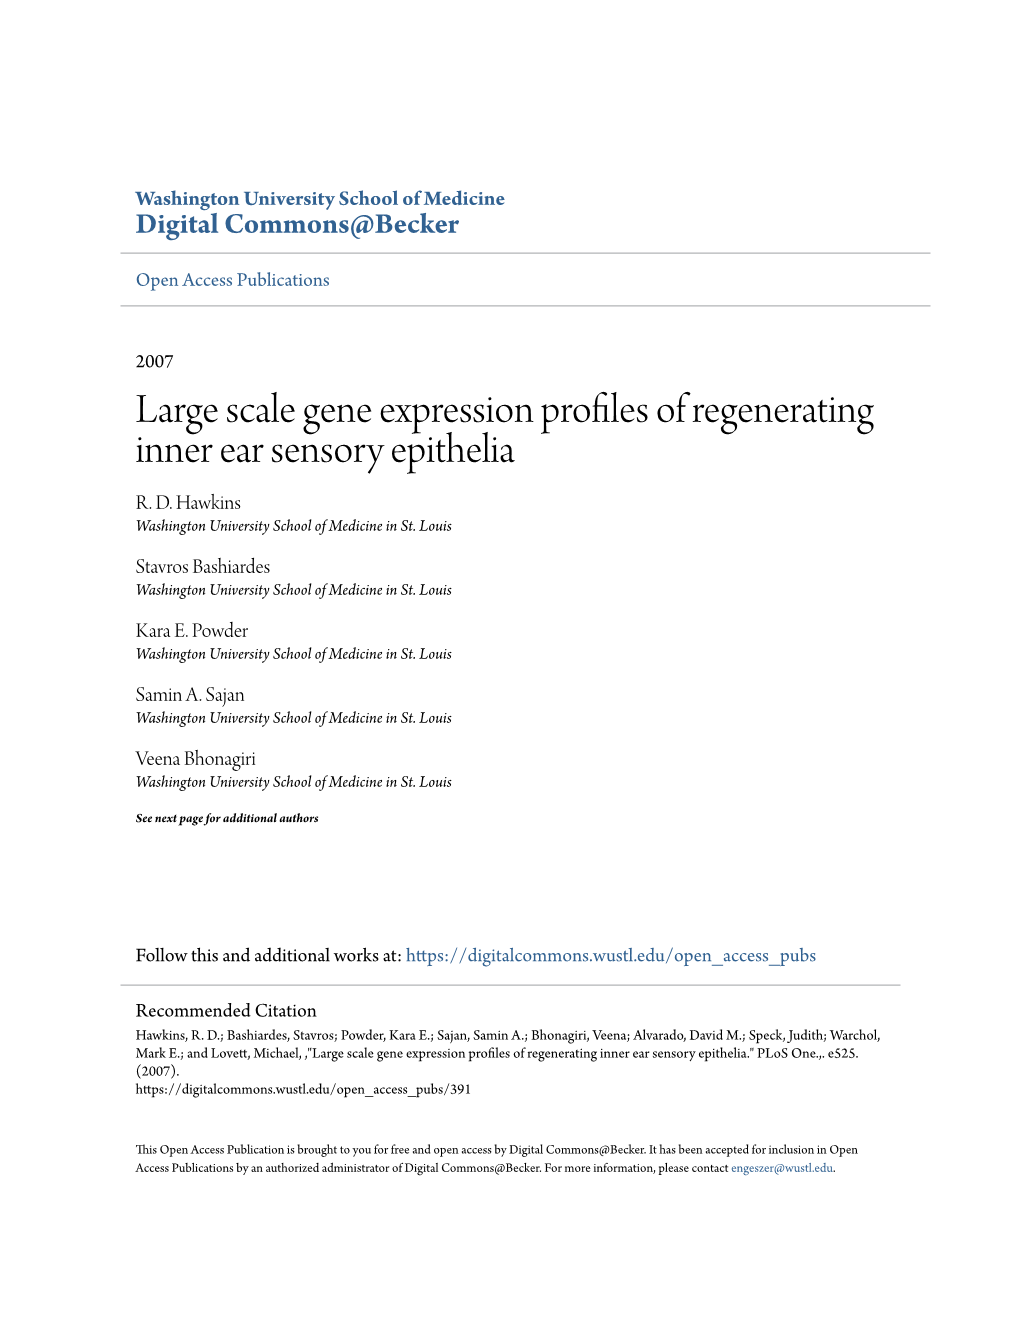 Large Scale Gene Expression Profiles of Regenerating Inner Ear Sensory Epithelia R